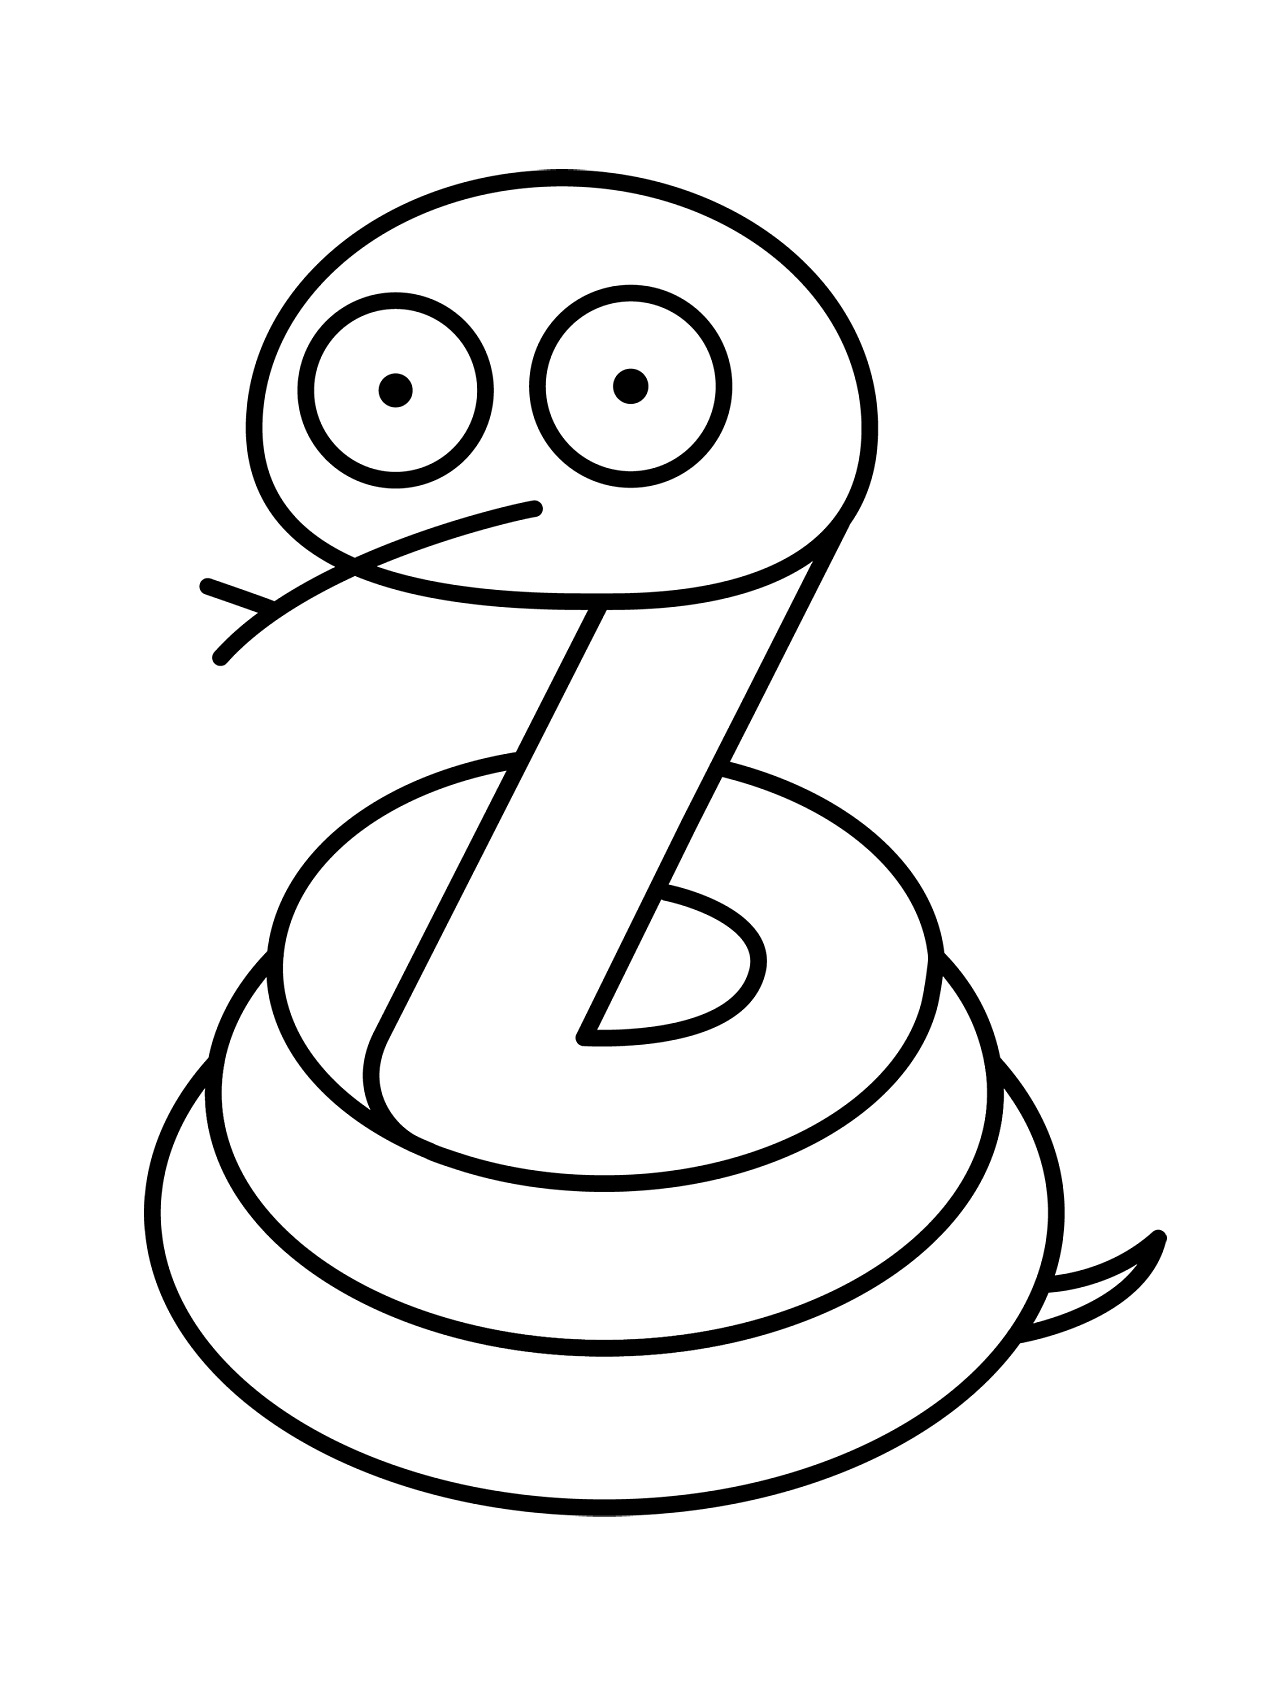 蛇简笔画简单画法图片